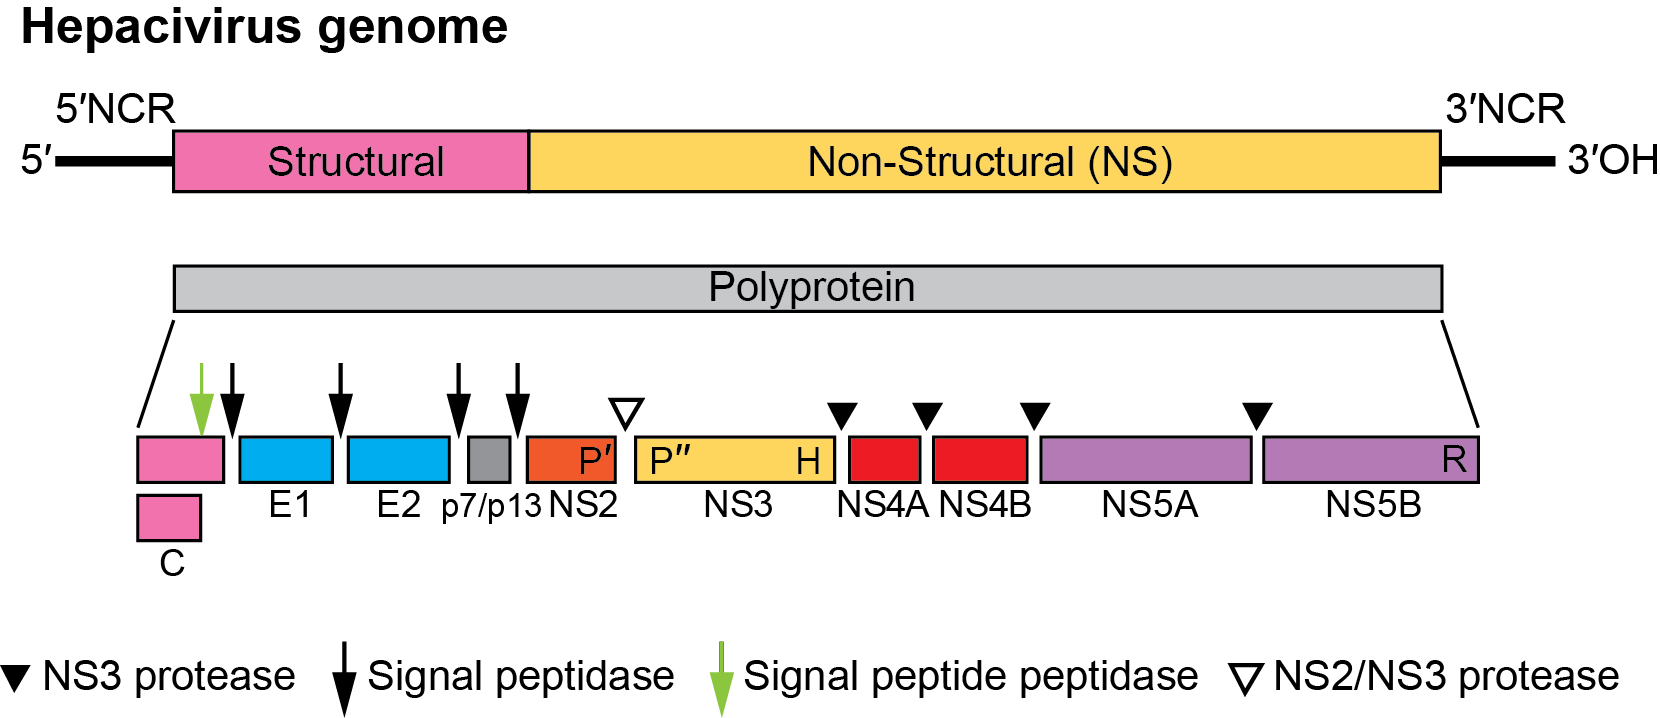 Hepacivirus Genome Organization